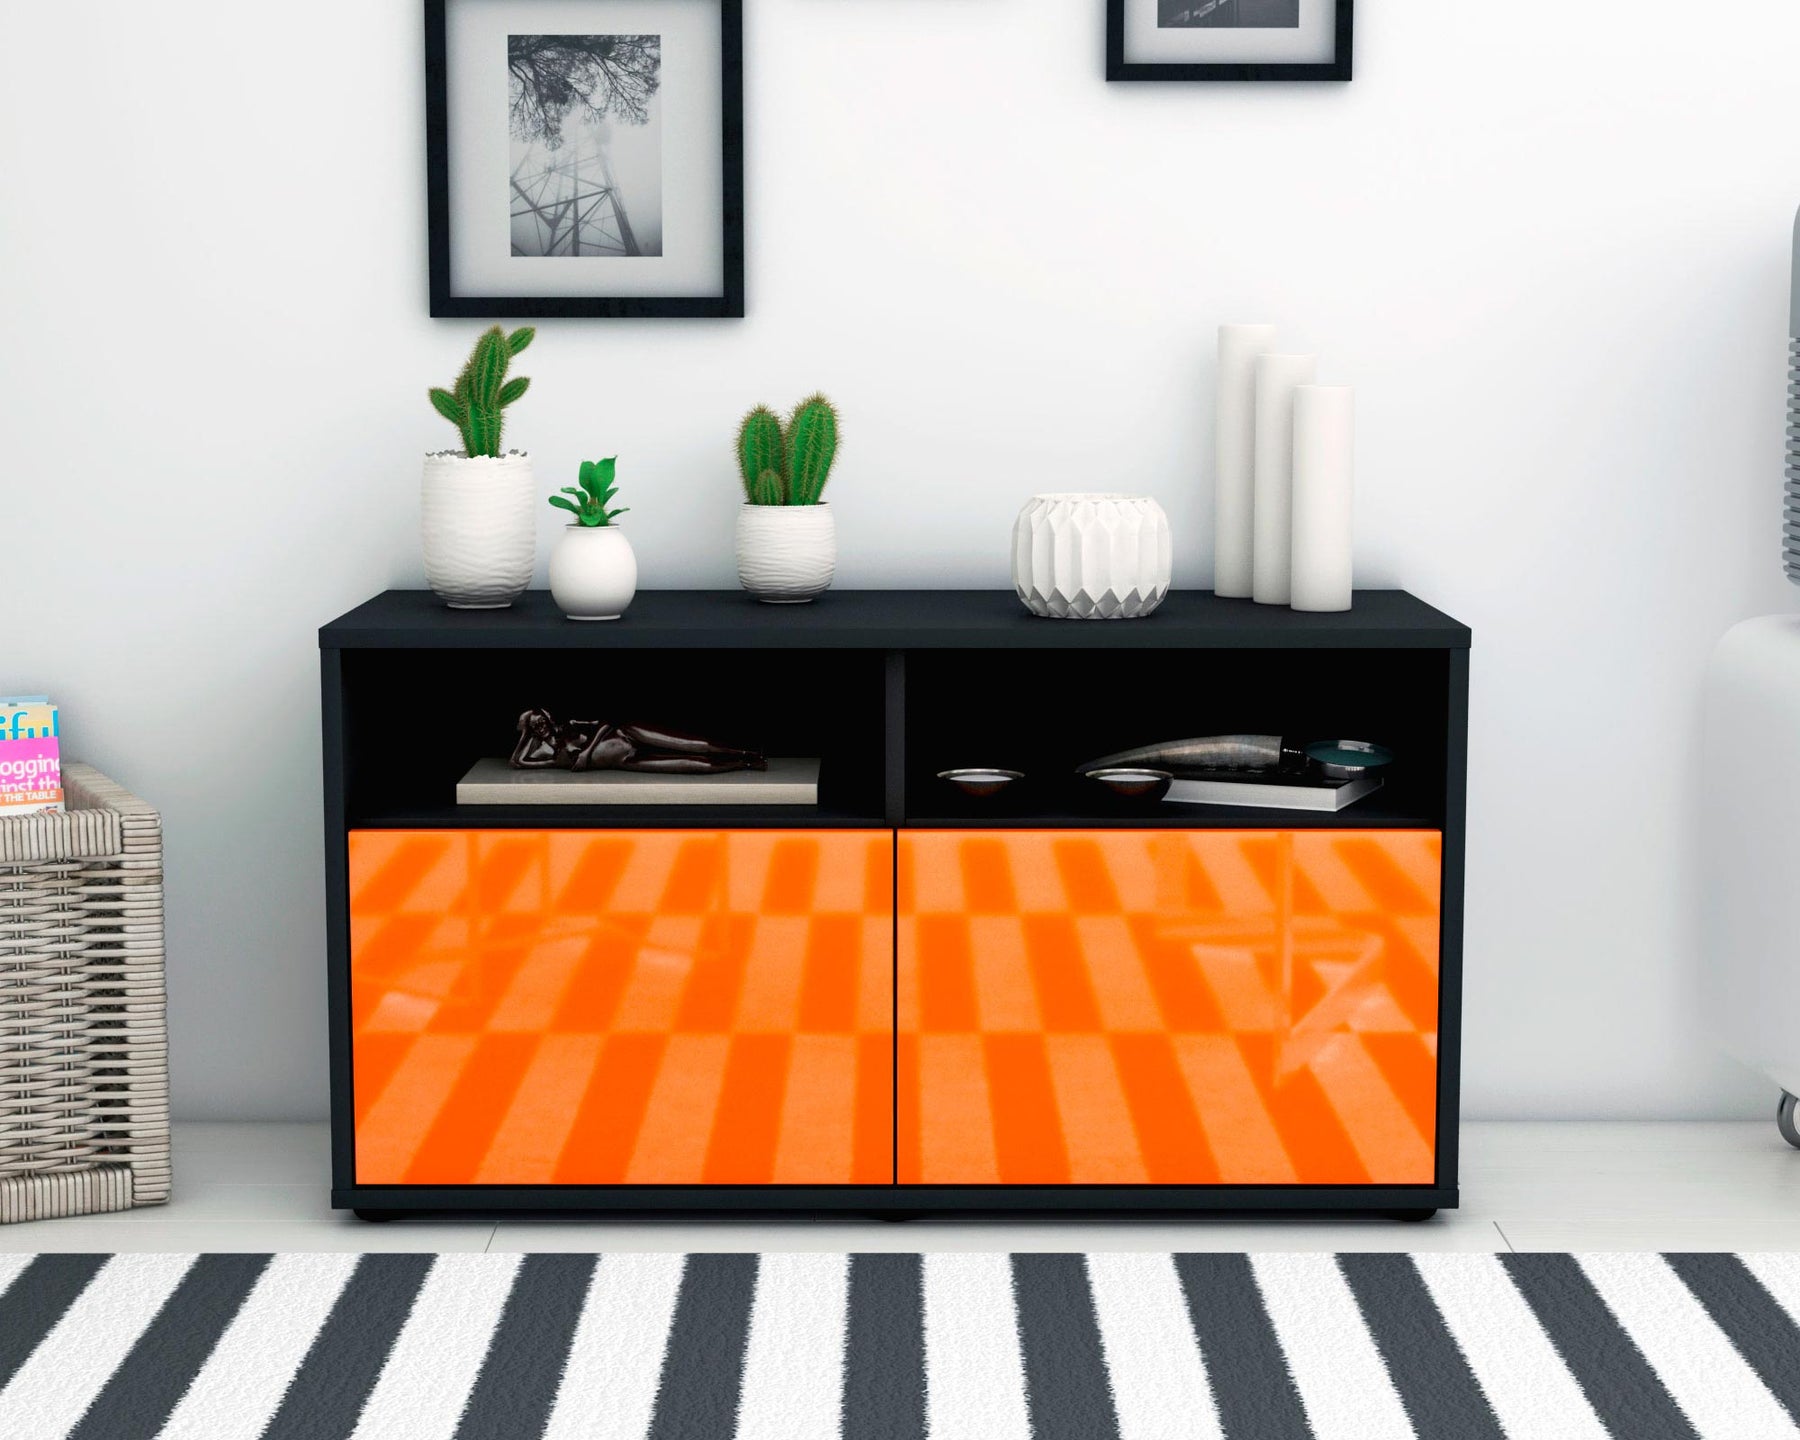 Lowboard Alegra, Orange (92x49x35cm)